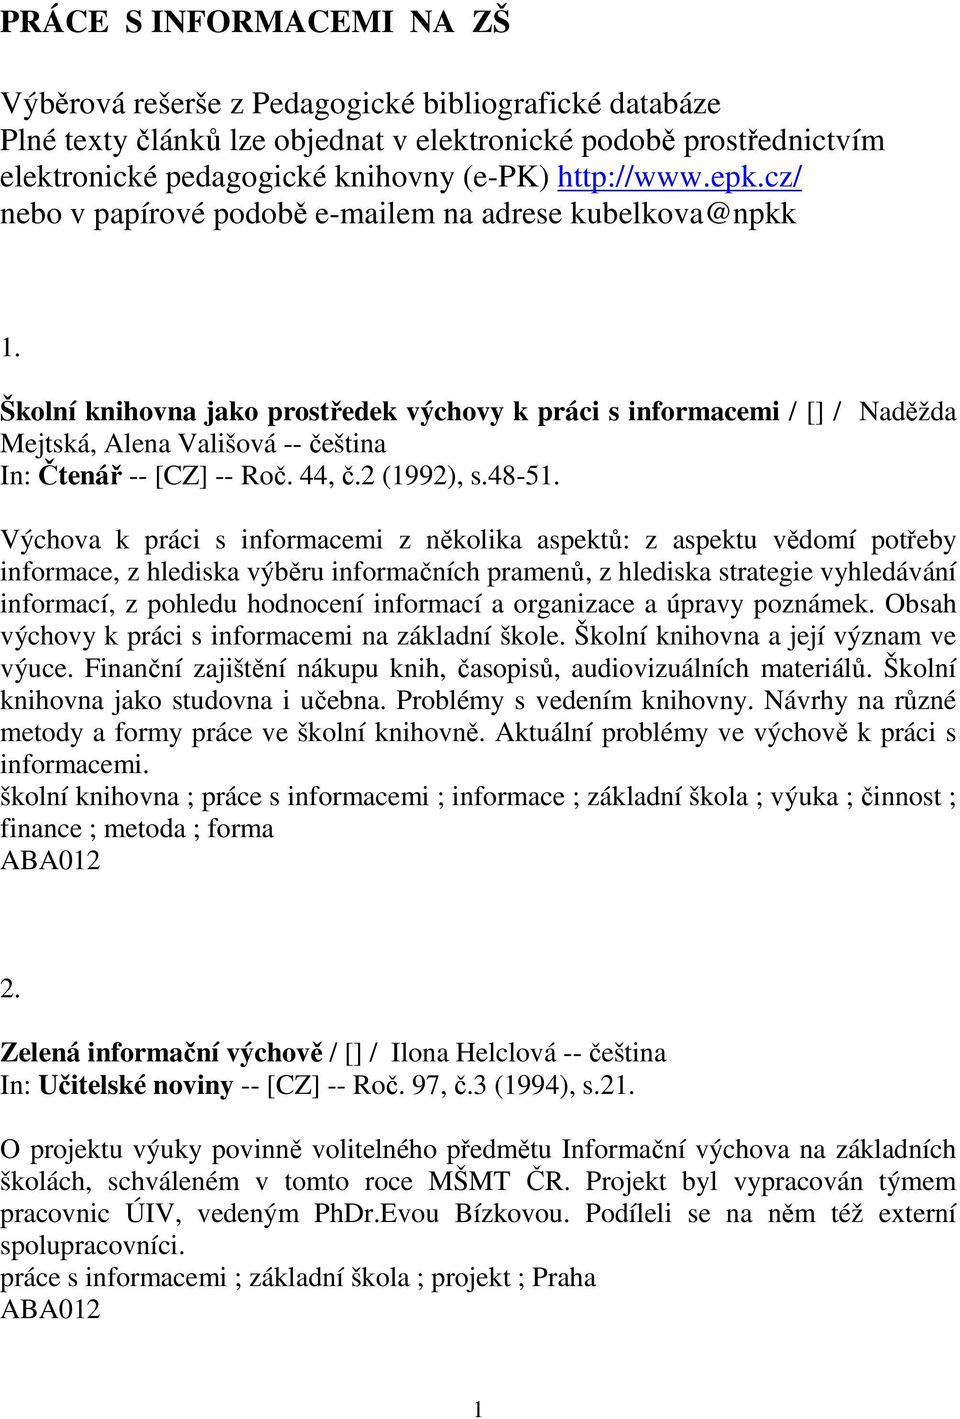 Školní knihovna jako prostředek výchovy k práci s informacemi / [] / Naděžda Mejtská, Alena Vališová -- čeština In: Čtenář -- [CZ] -- Roč. 44, č.2 (1992), s.48-51.